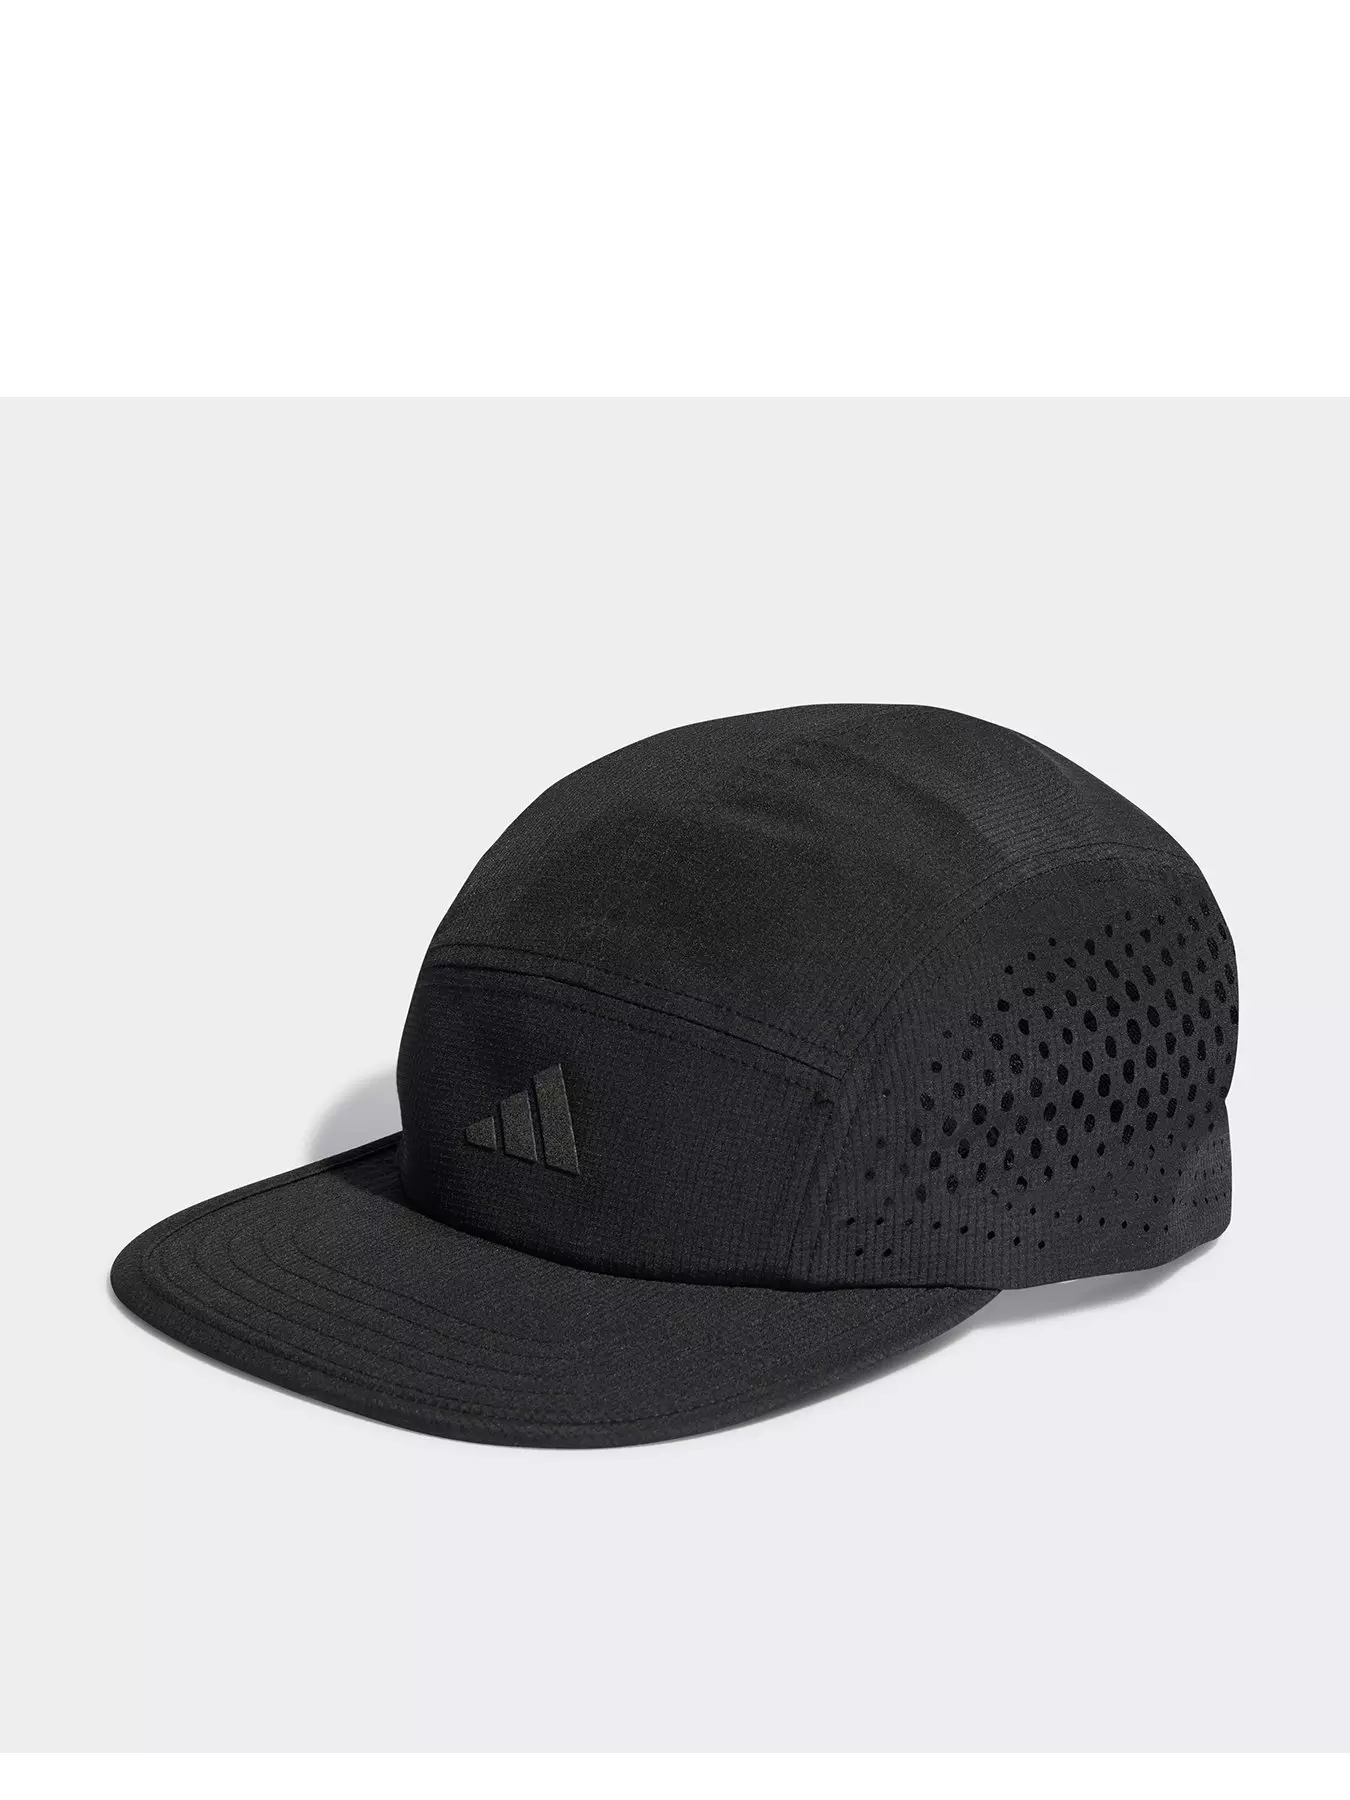 Adidas | Caps & hats Men Accessories | 